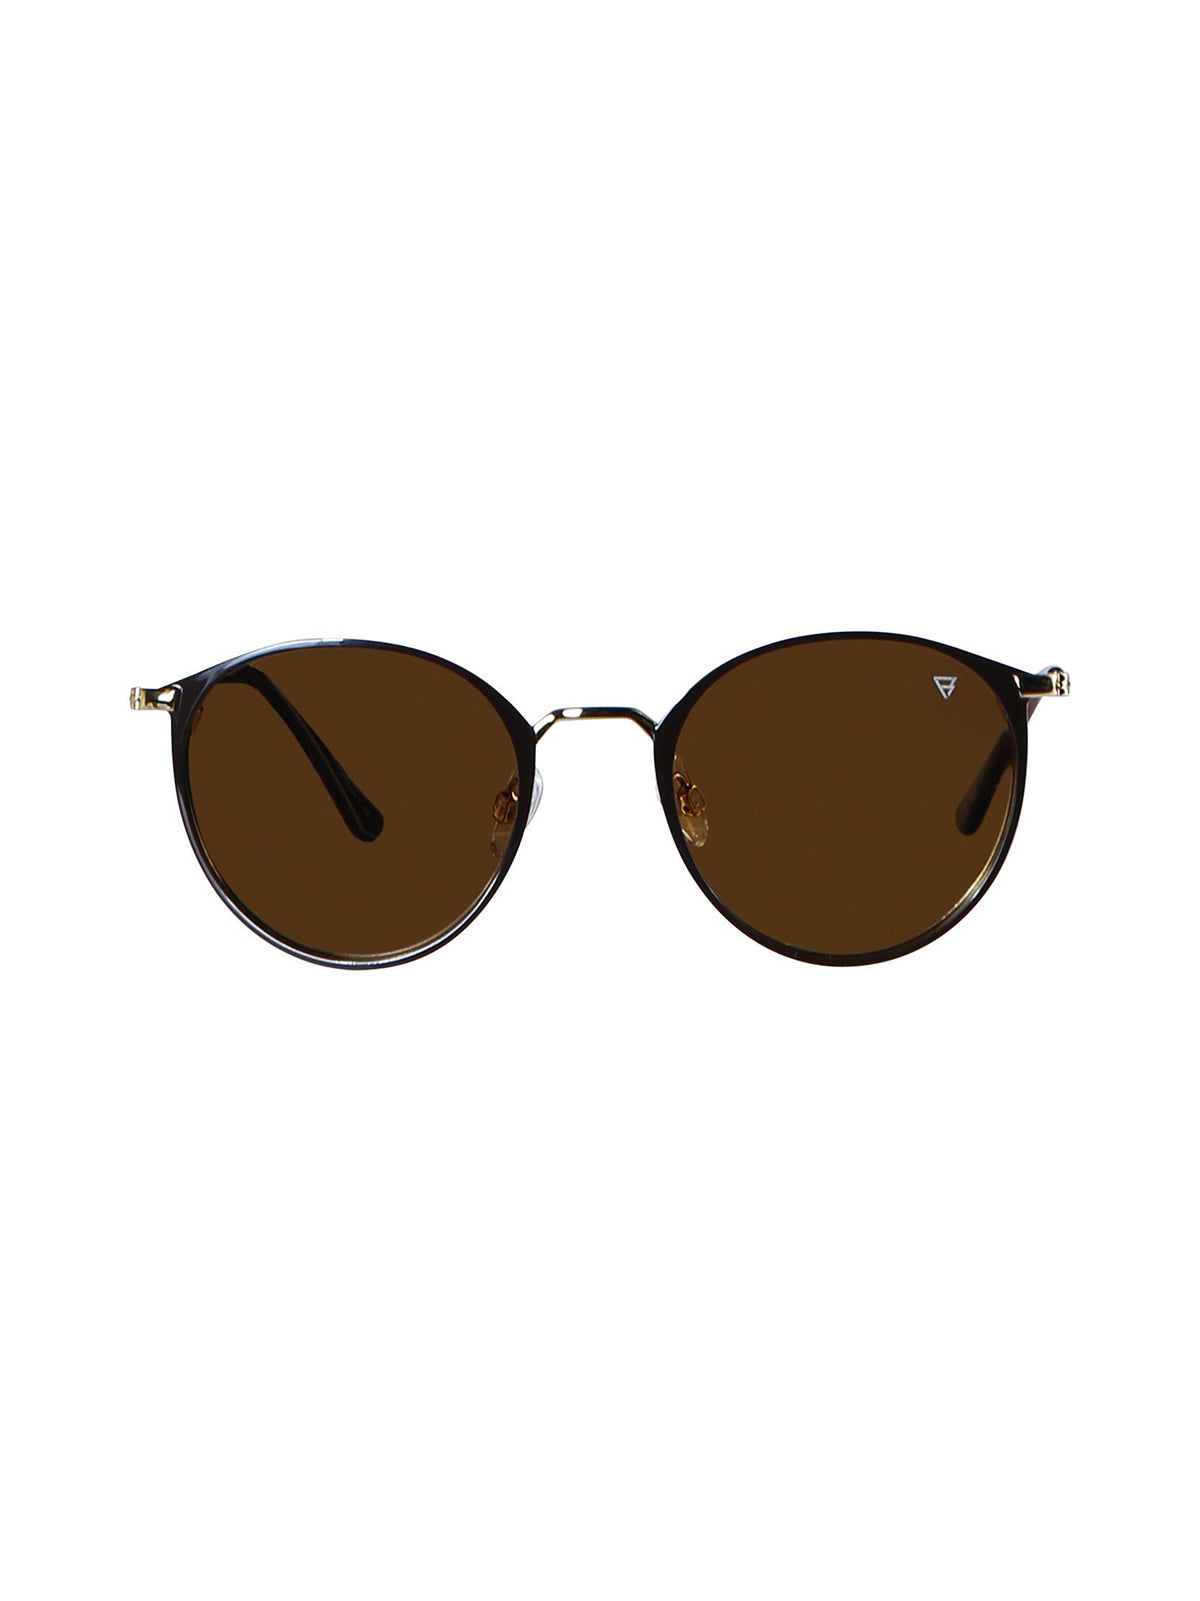 Huron 2 Sunglasses | Brown